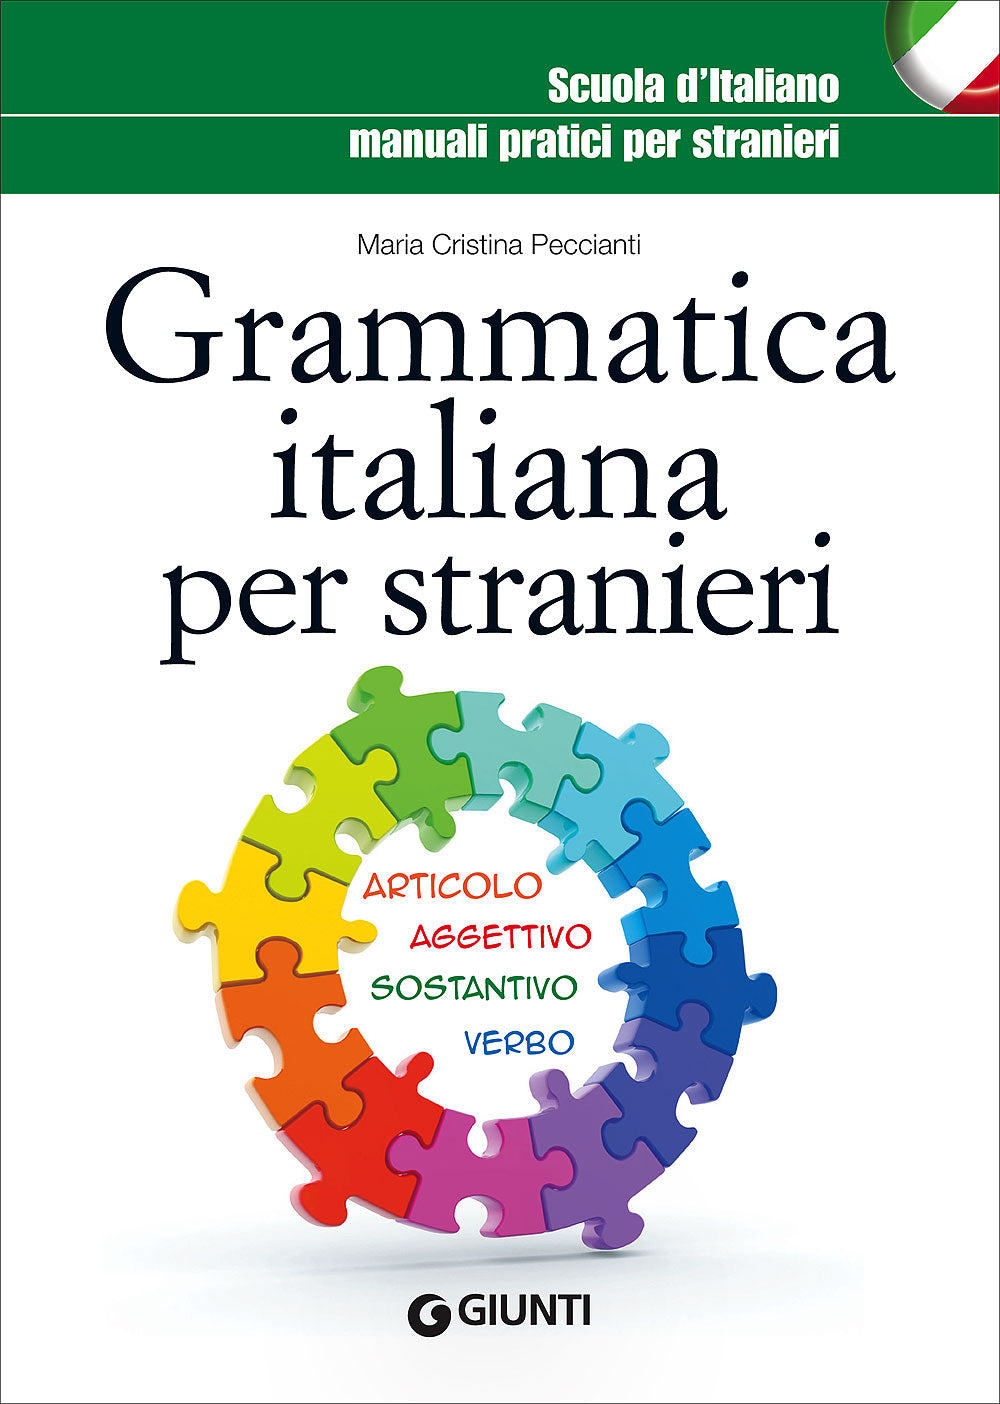 Grammatica italiana per stranieri, Maria Cristina Peccianti